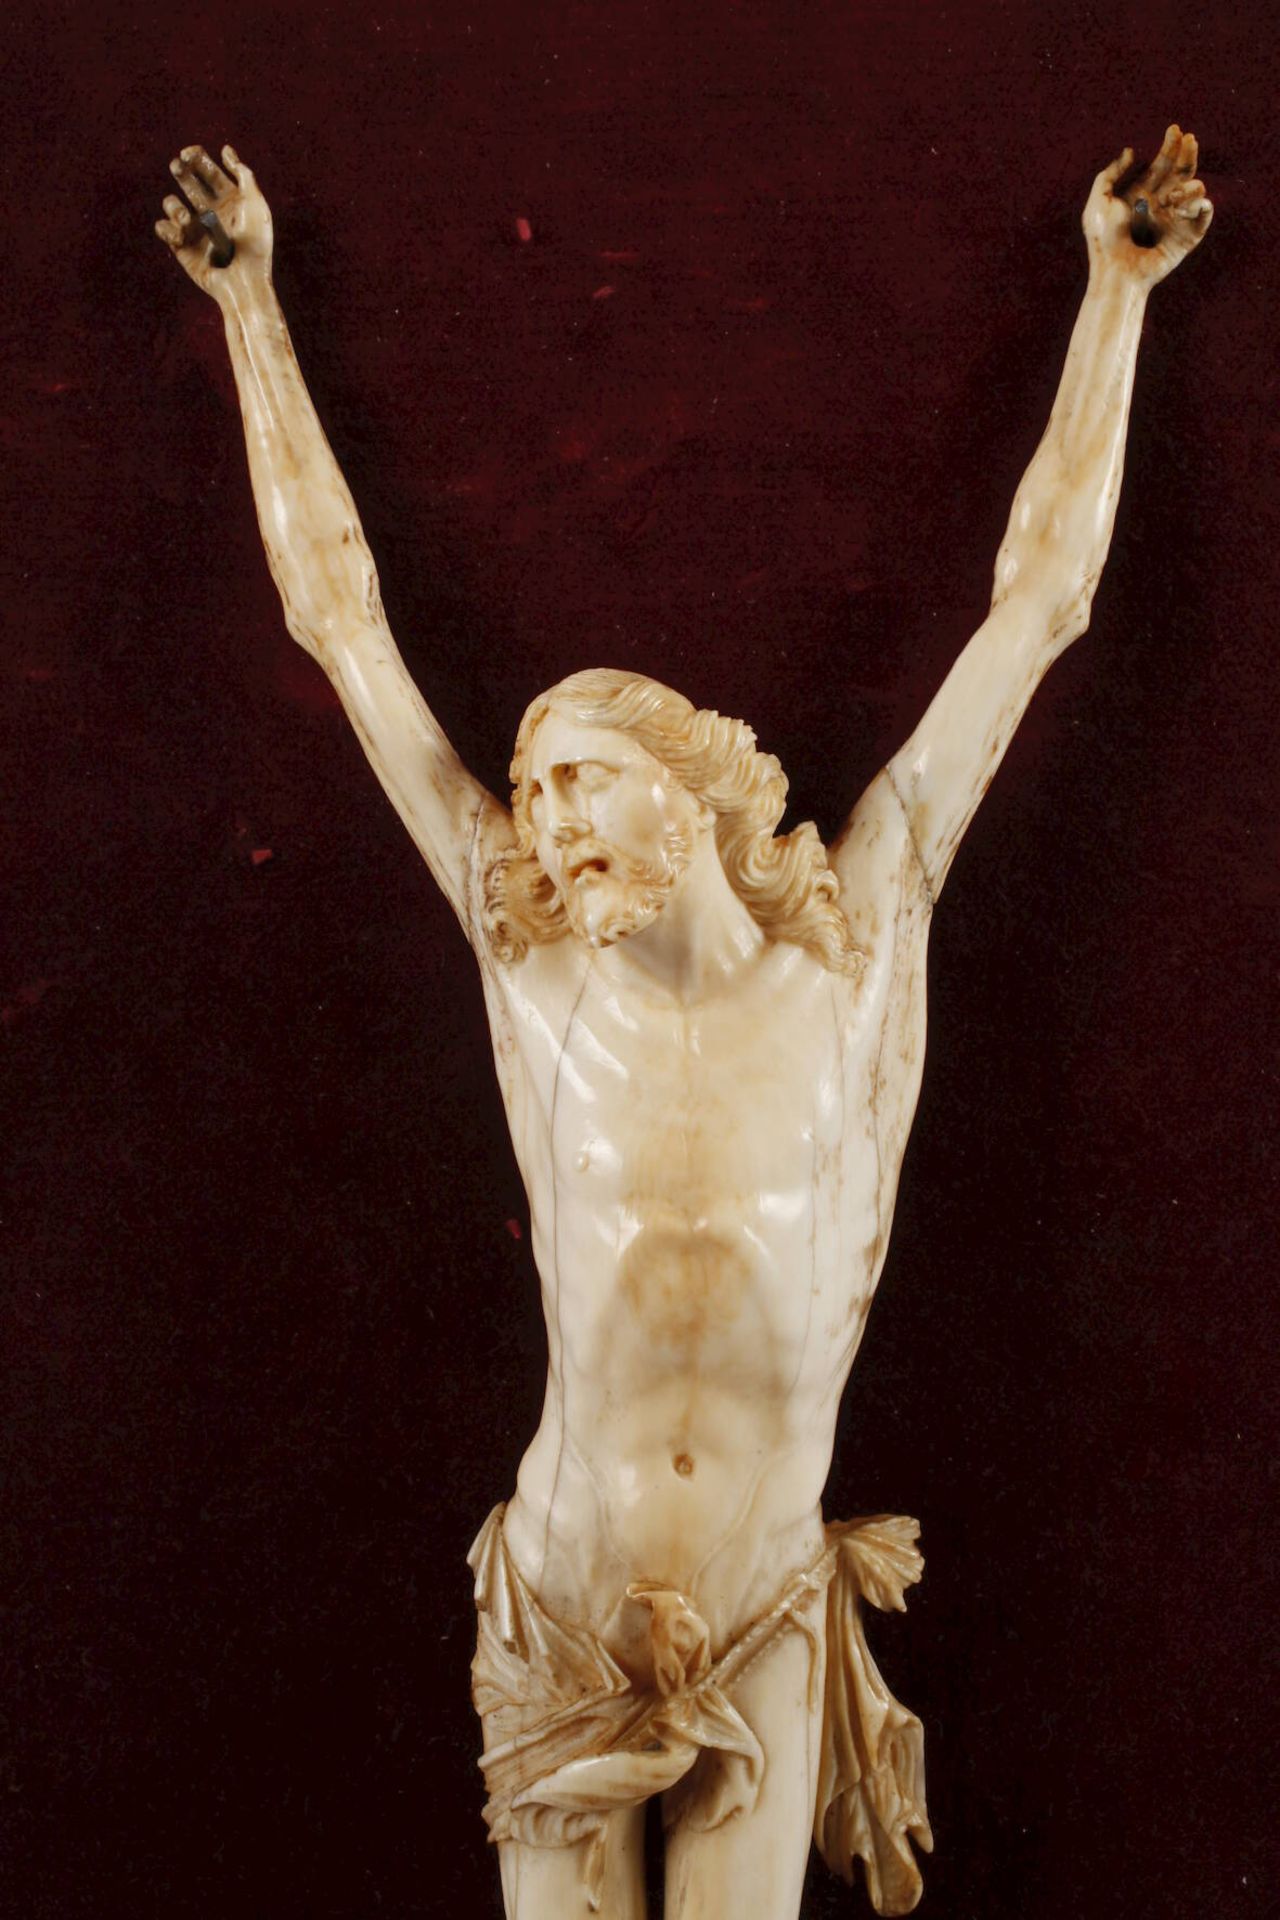 Corpus Christi ElfenbeinMitte 18. Jh., Elfenbein aufwendig beschnitzt, mehrteilig gearbeitet, - Bild 3 aus 6